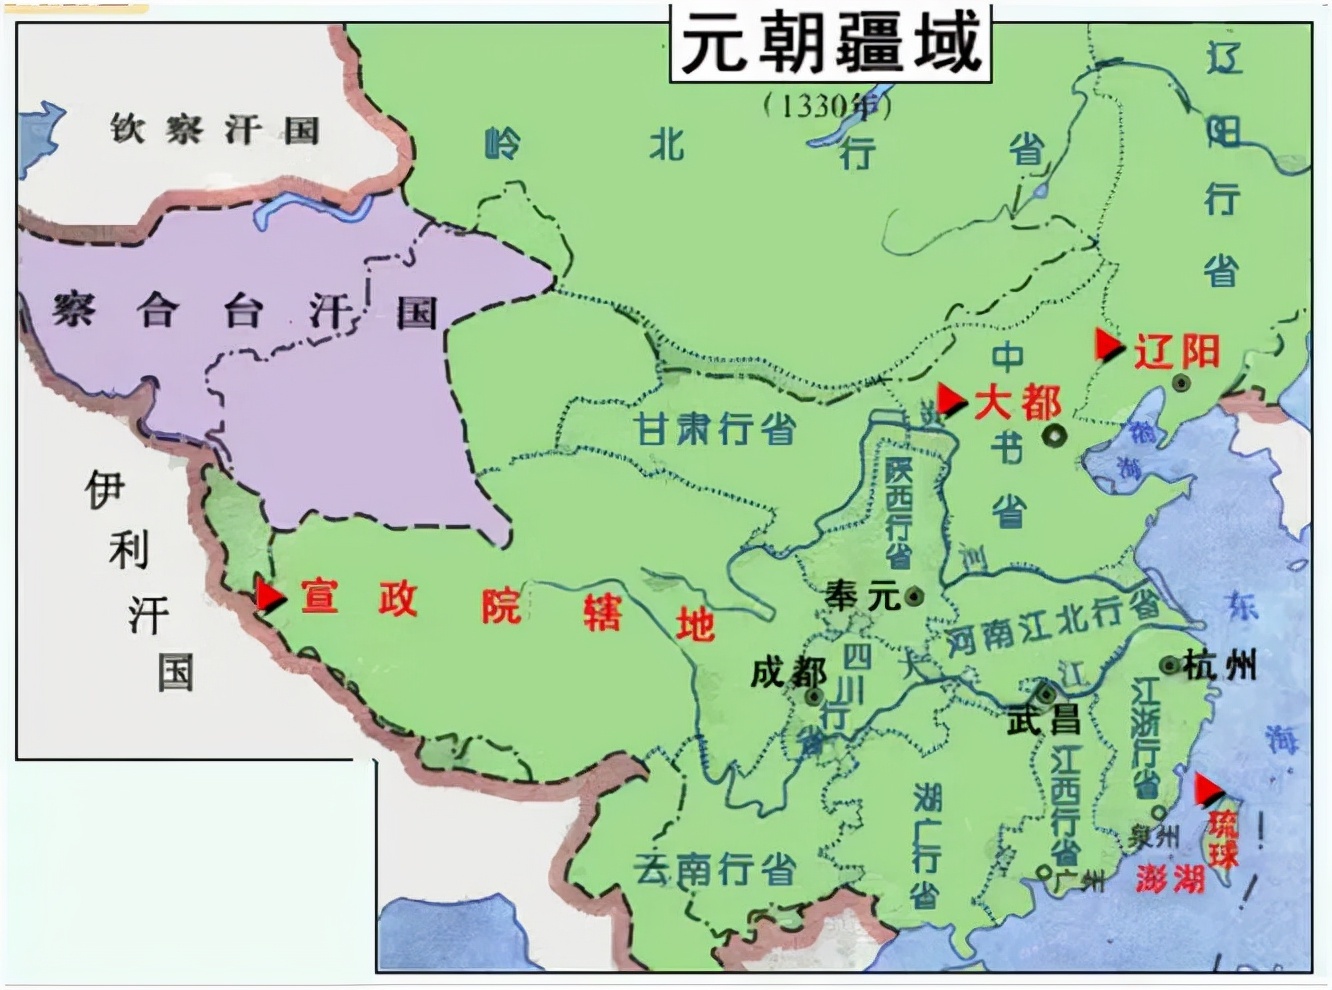 历史>热文>正文> 直到元代将西藏统一并正式纳入中国版图后,不丹和